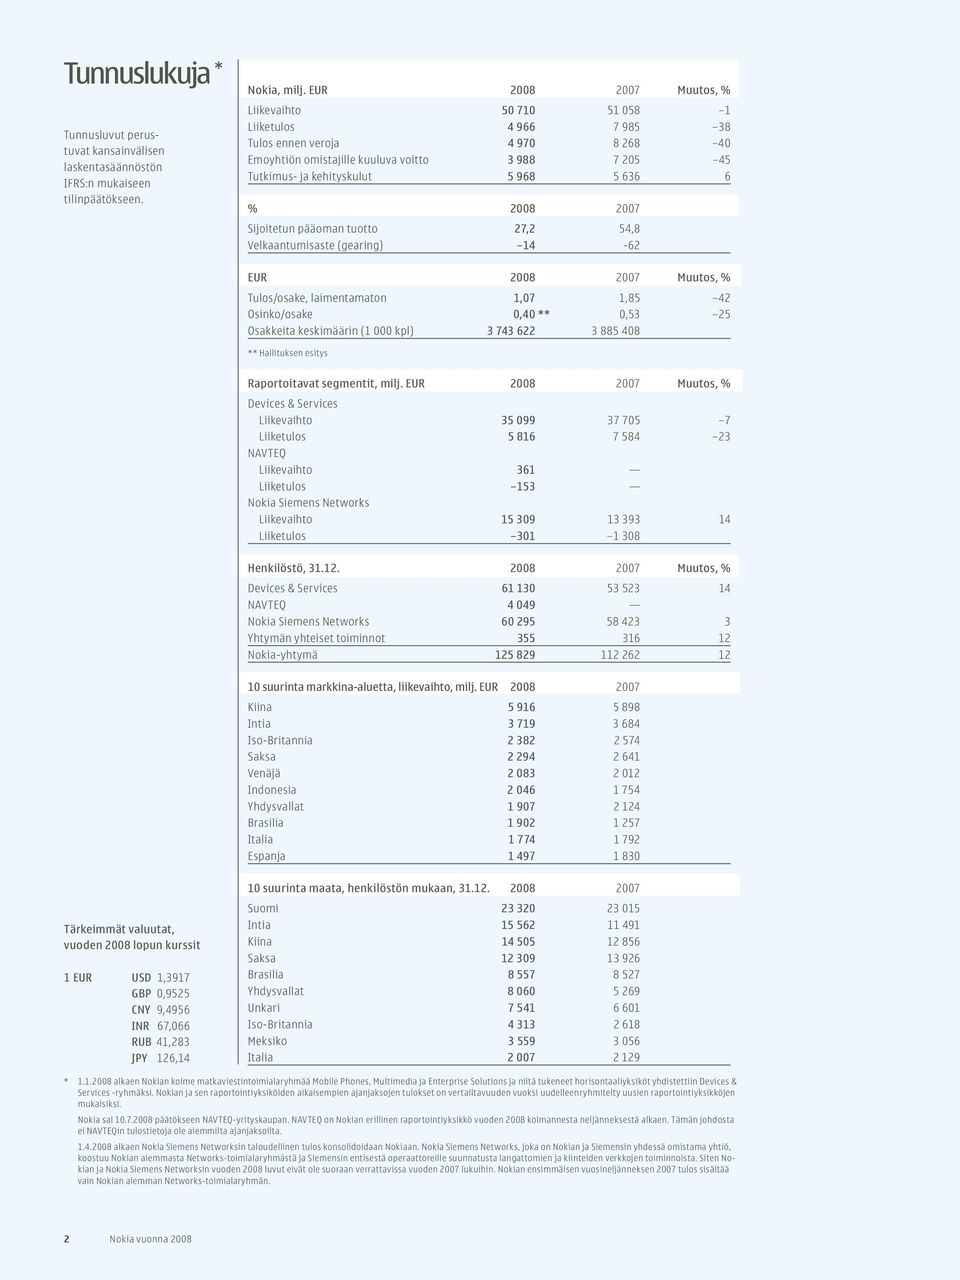 636 6 % 2008 2007 Sijoitetun pääoman tuotto 27,2 54,8 Velkaantumisaste (gearing) 14-62 EUR 2008 2007 Muutos, % Tulos/osake, laimentamaton 1,07 1,85 42 Osinko/osake 0,40 ** 0,53 25 Osakkeita